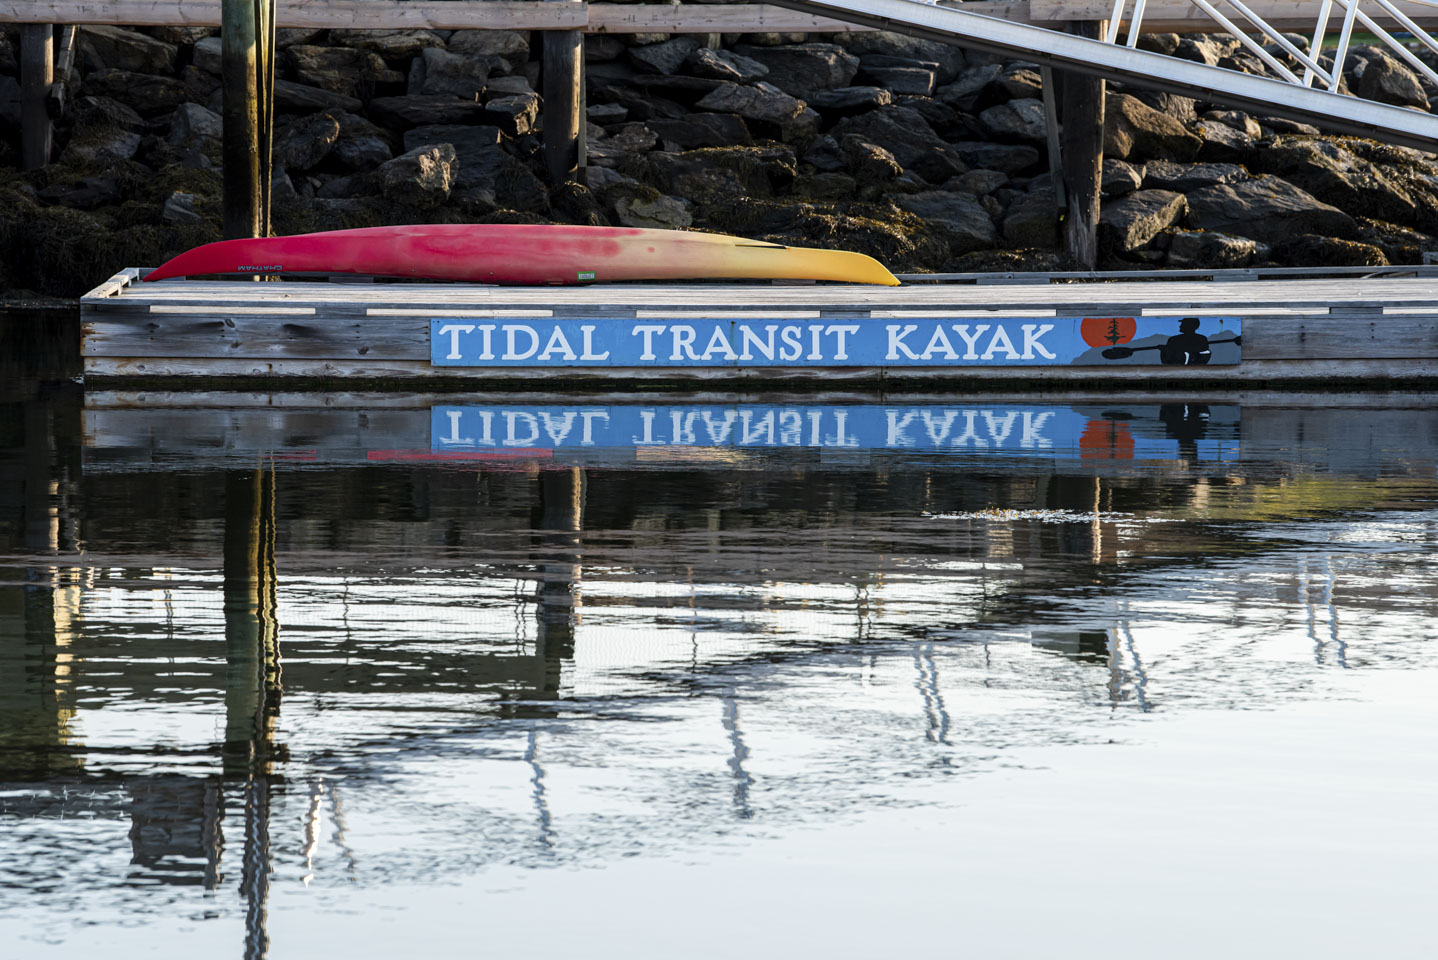 Tidal Transit Kayak rental location